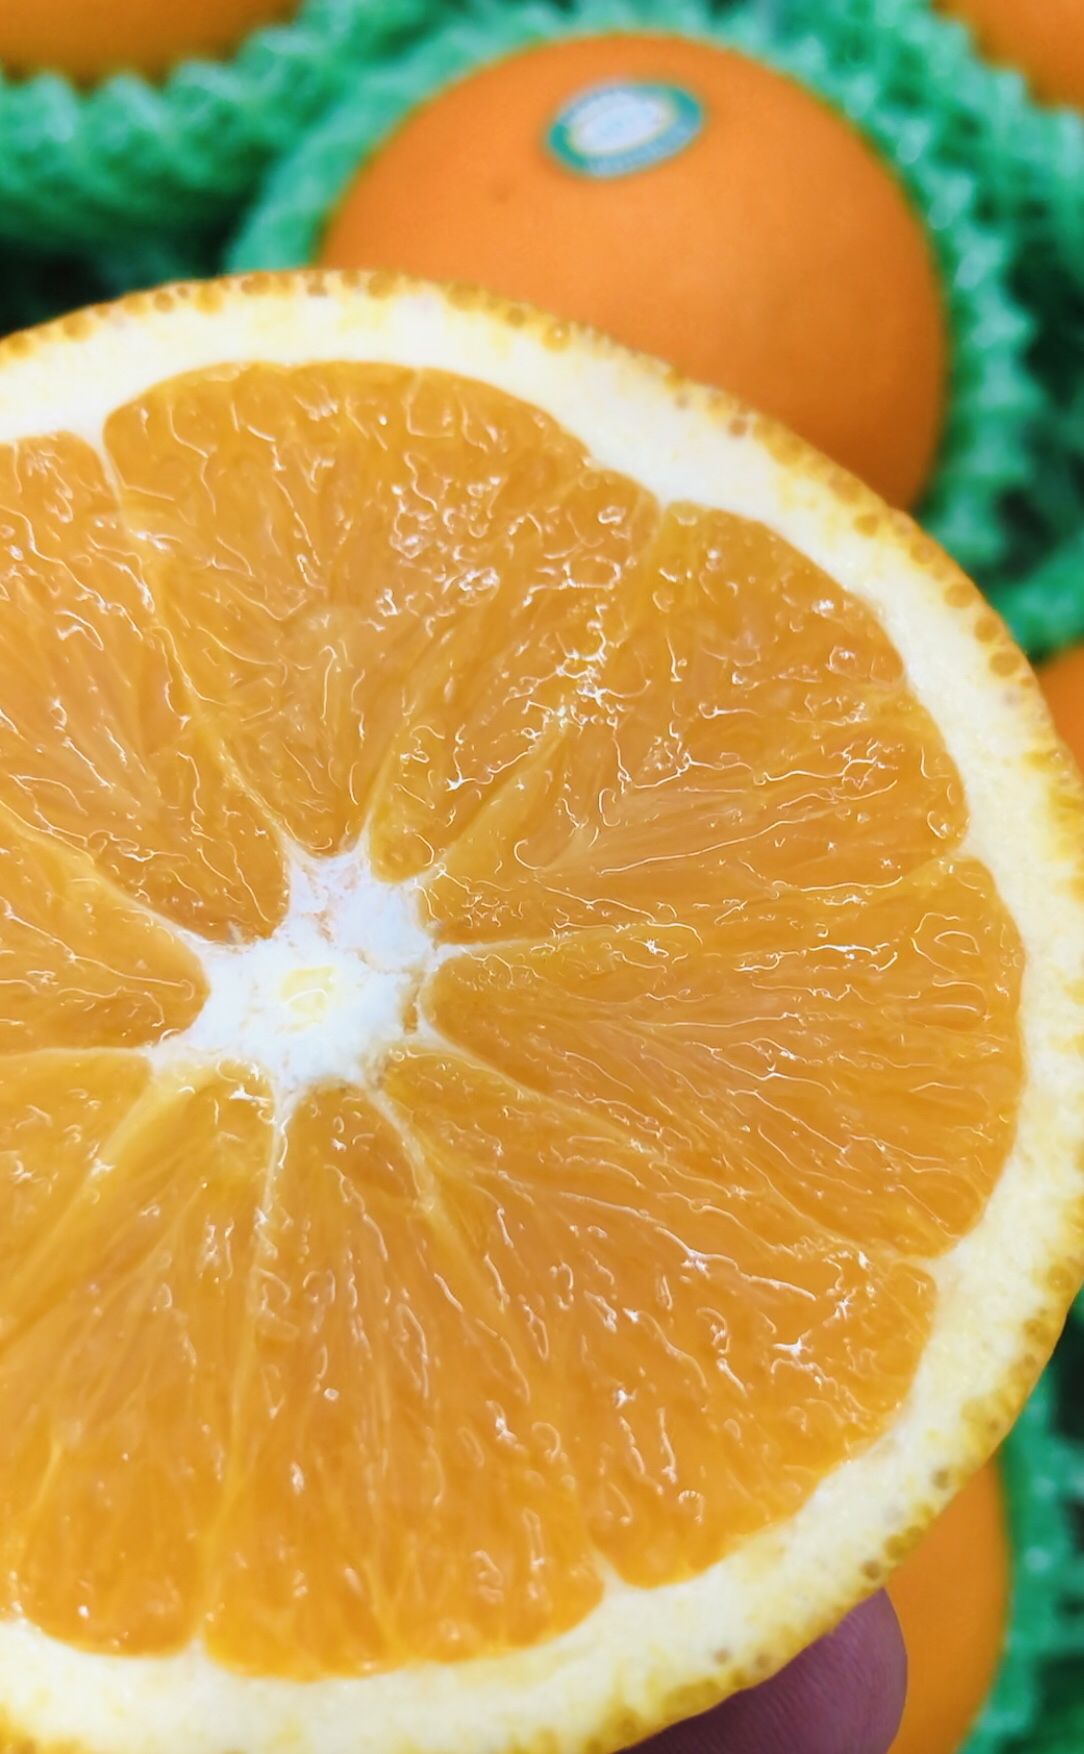 澳洲阳光甜橙非常嫩化渣橙子果皮颜色偏橙红色肉质细嫩汁水丰润鲜甜橙